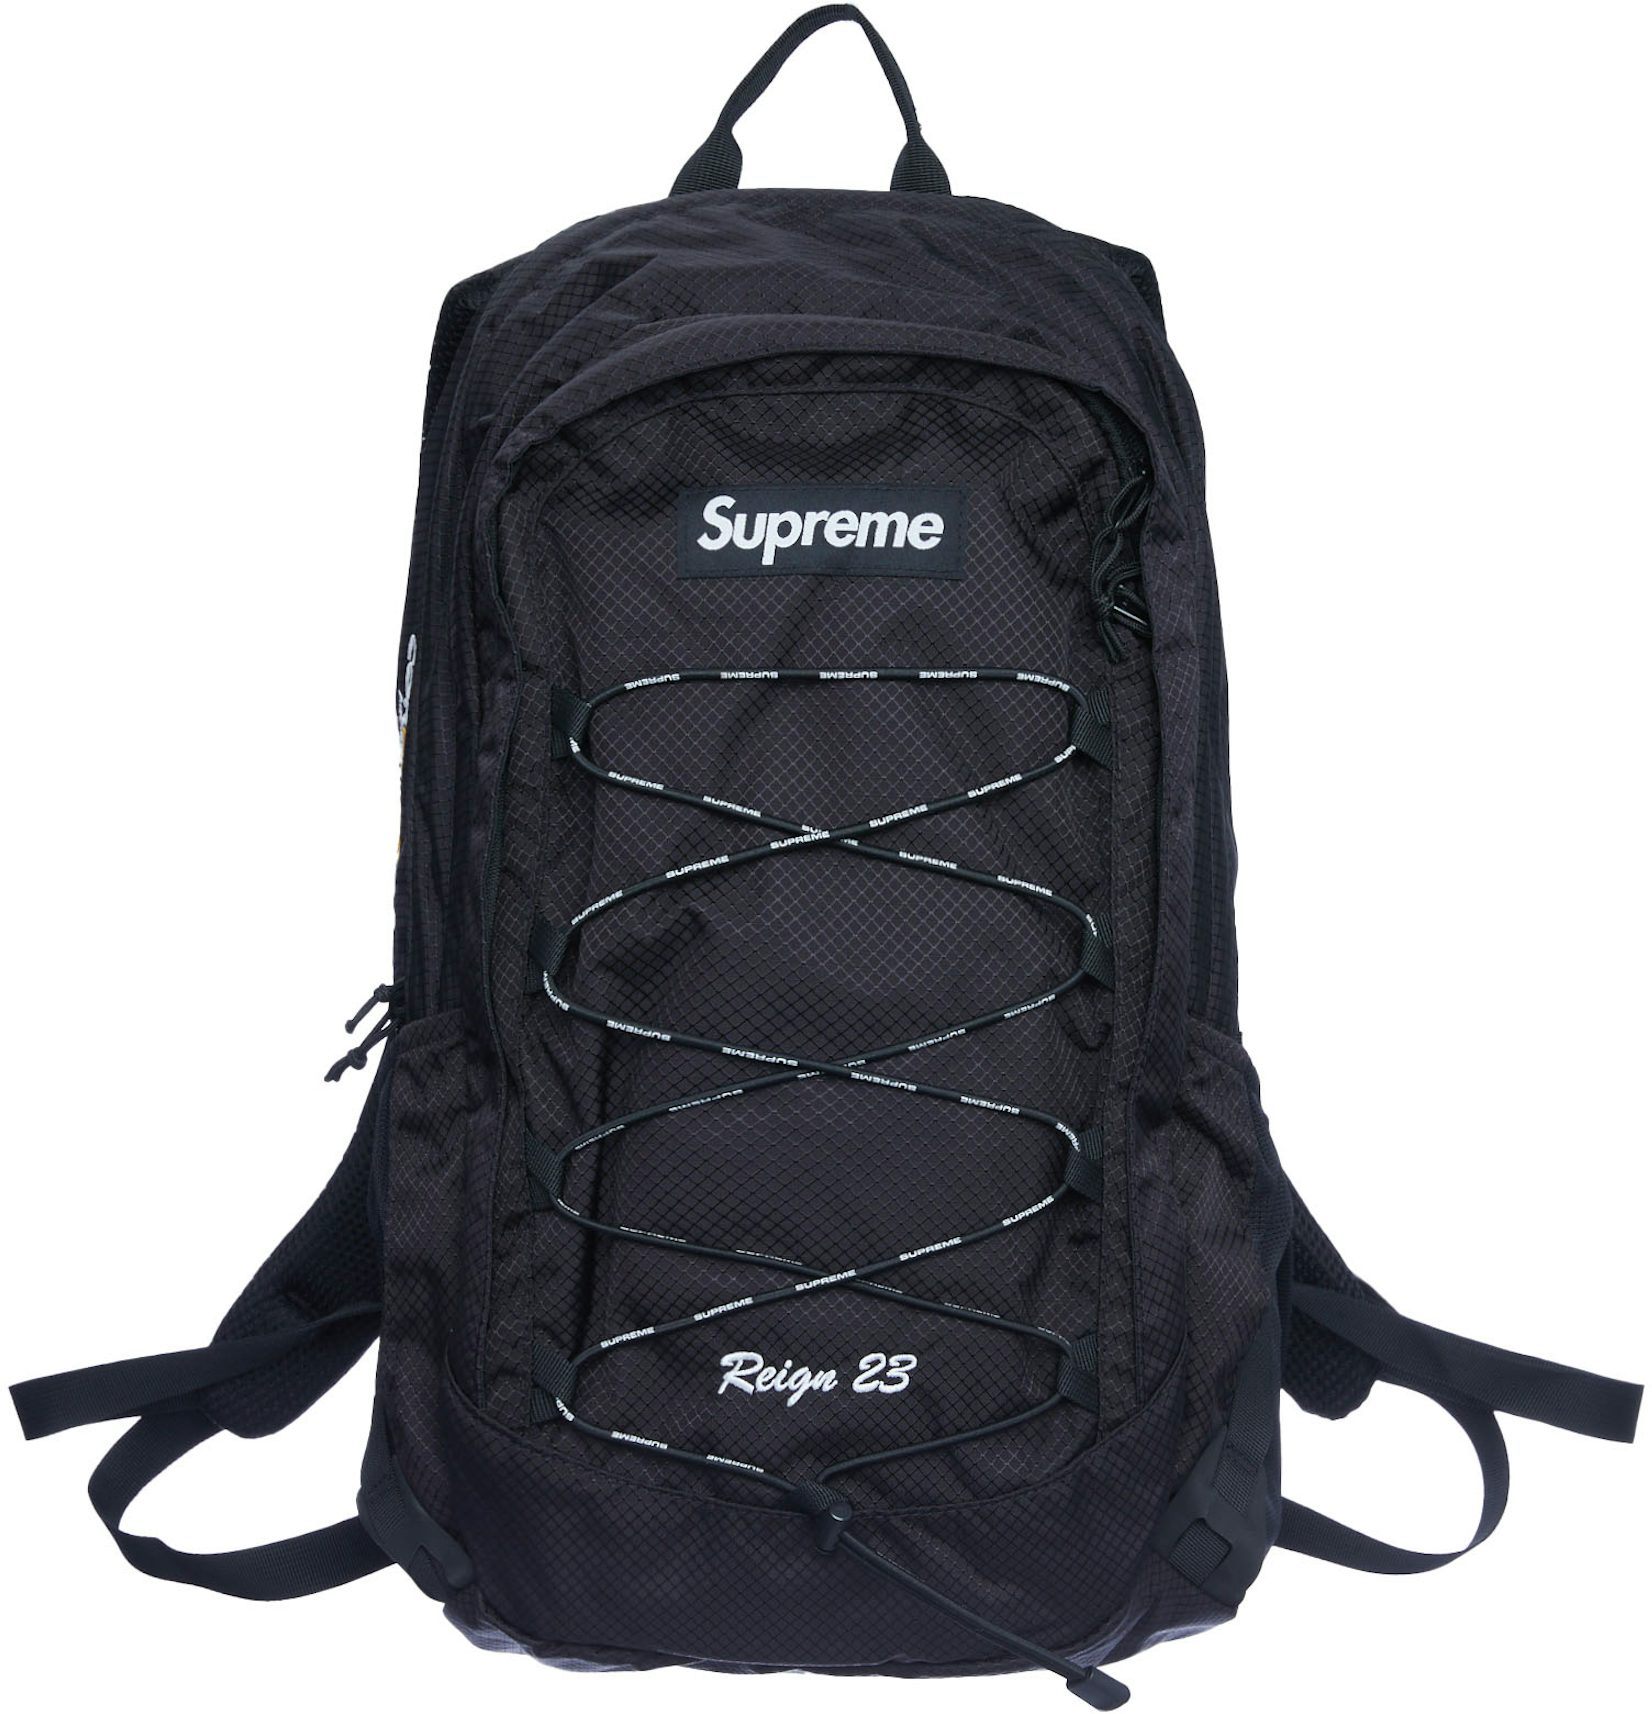 Supreme Backpacks for Women